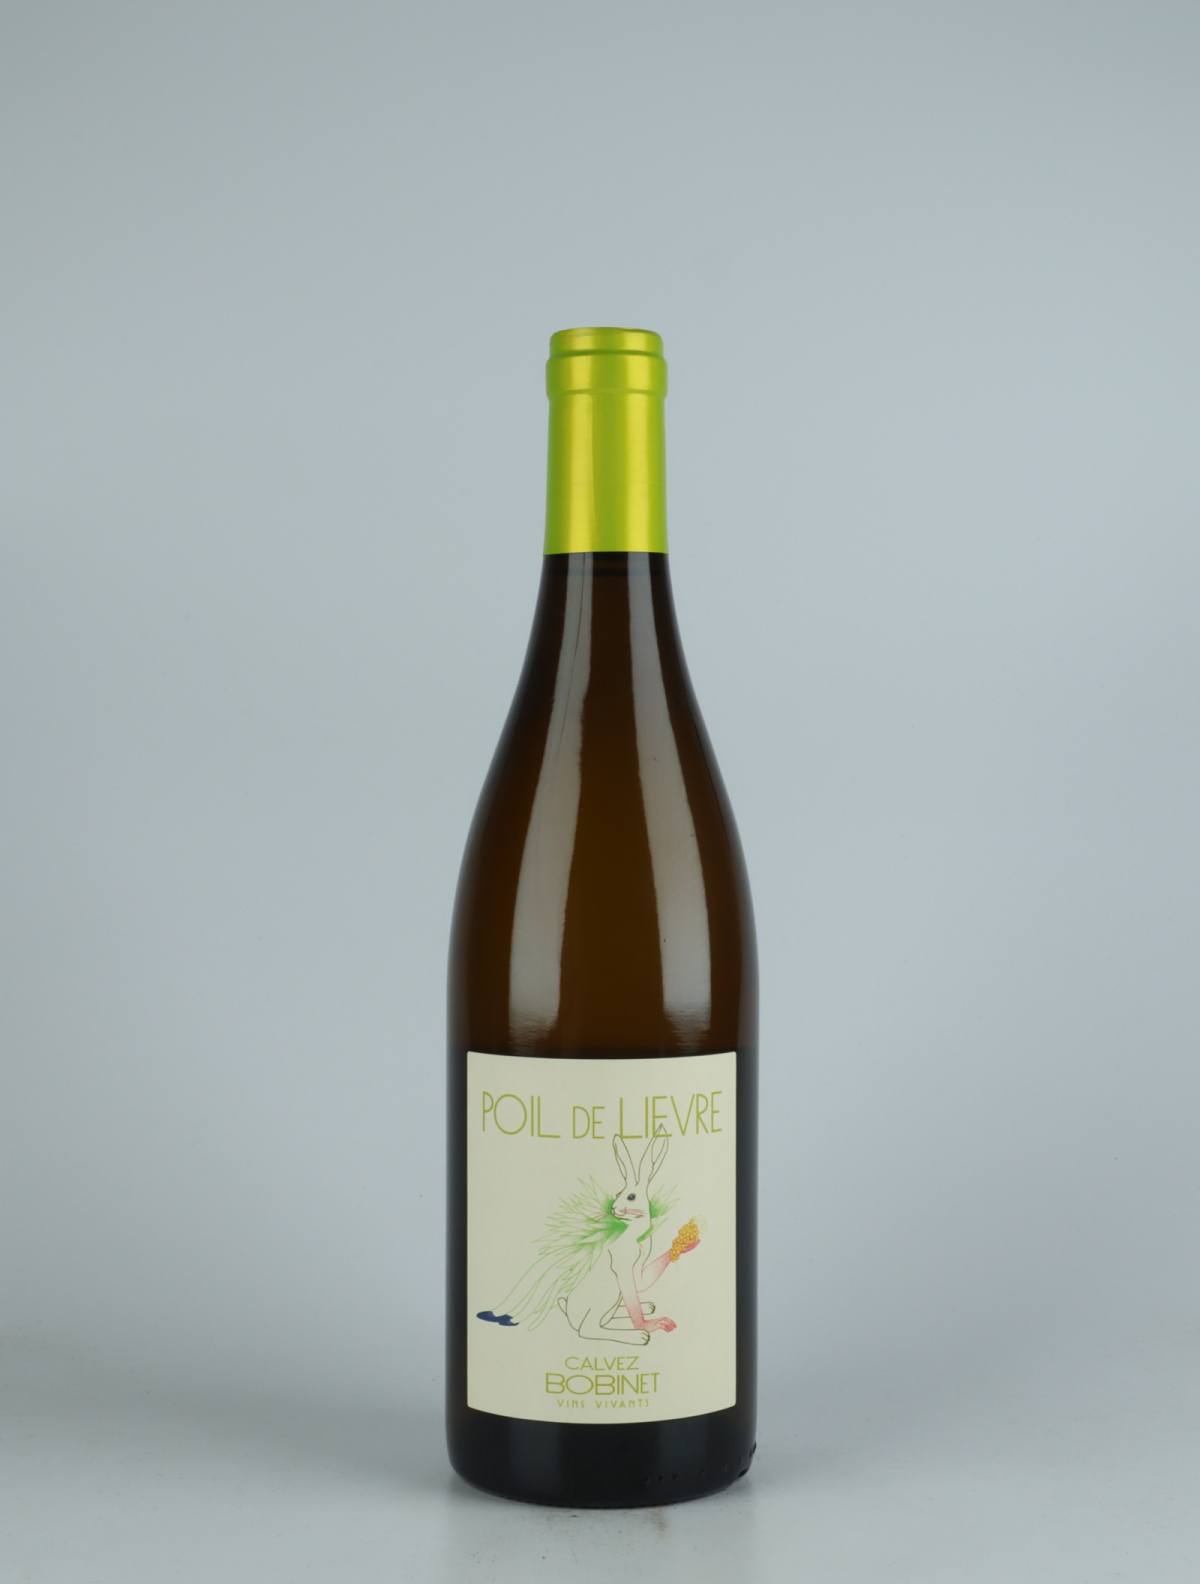 A bottle 2021 Saumur Blanc - Poil de Lièvre White wine from Domaine Bobinet, Loire in France